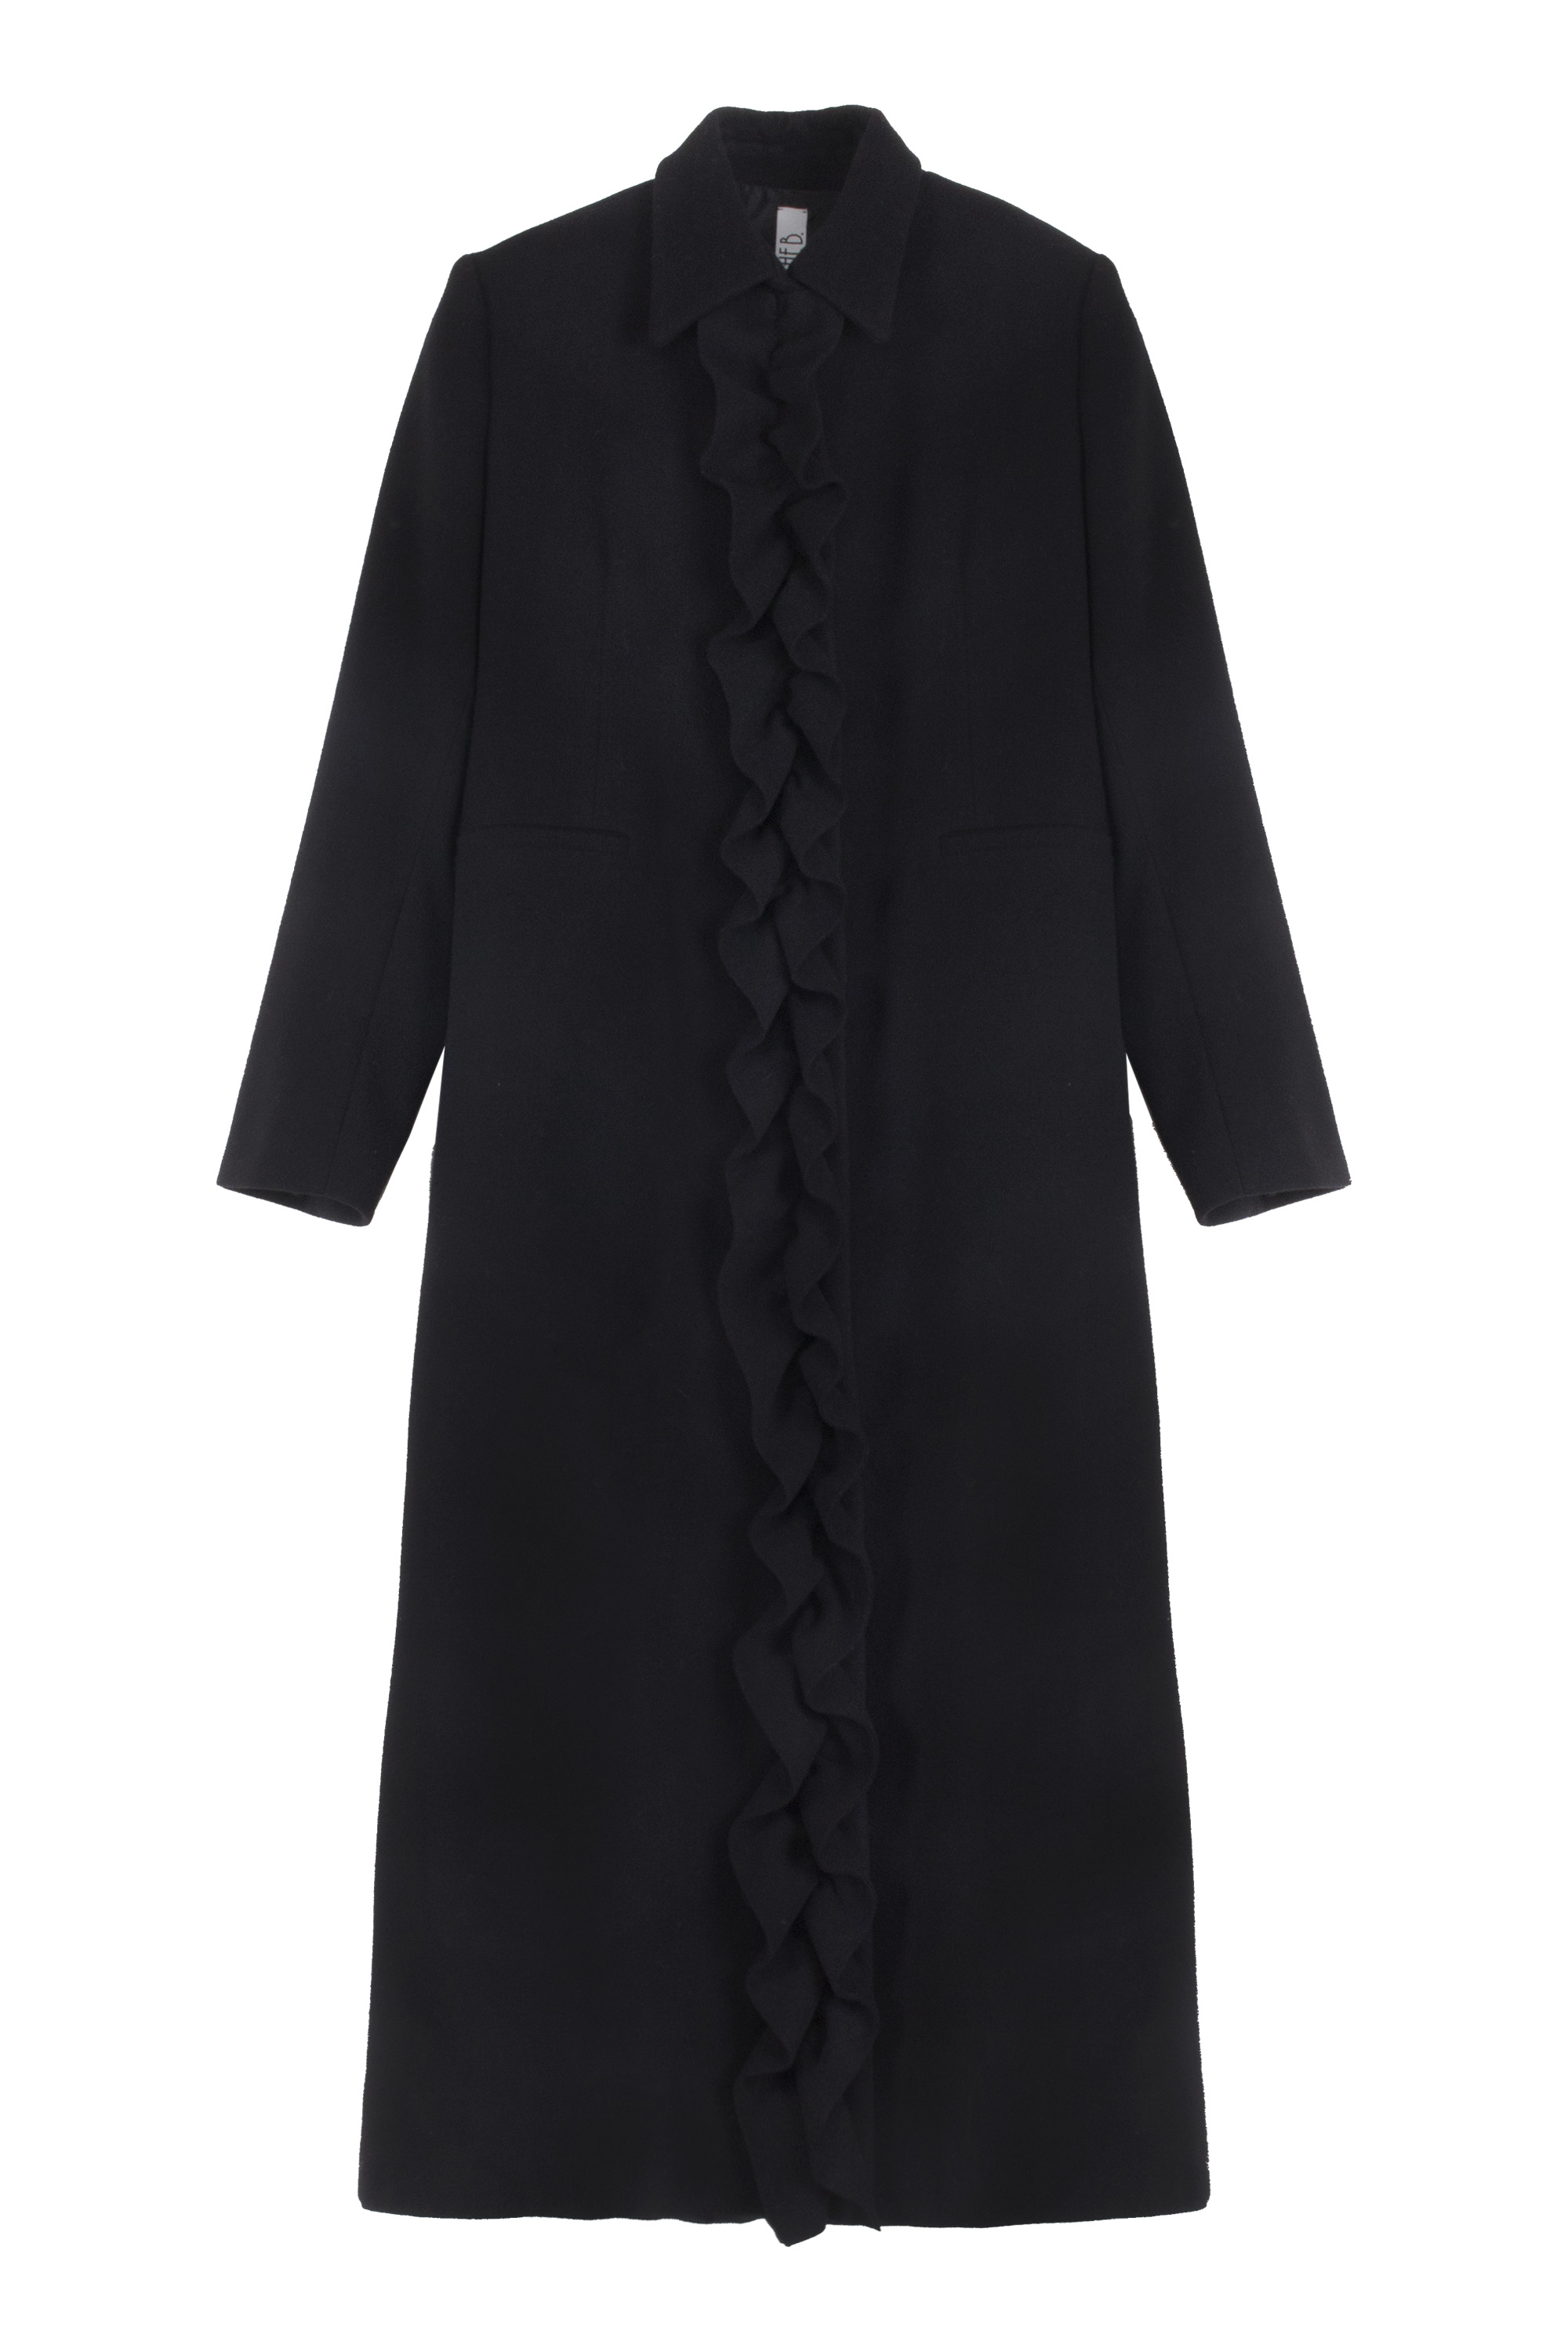 Cappotto lungo lana nera con rouches